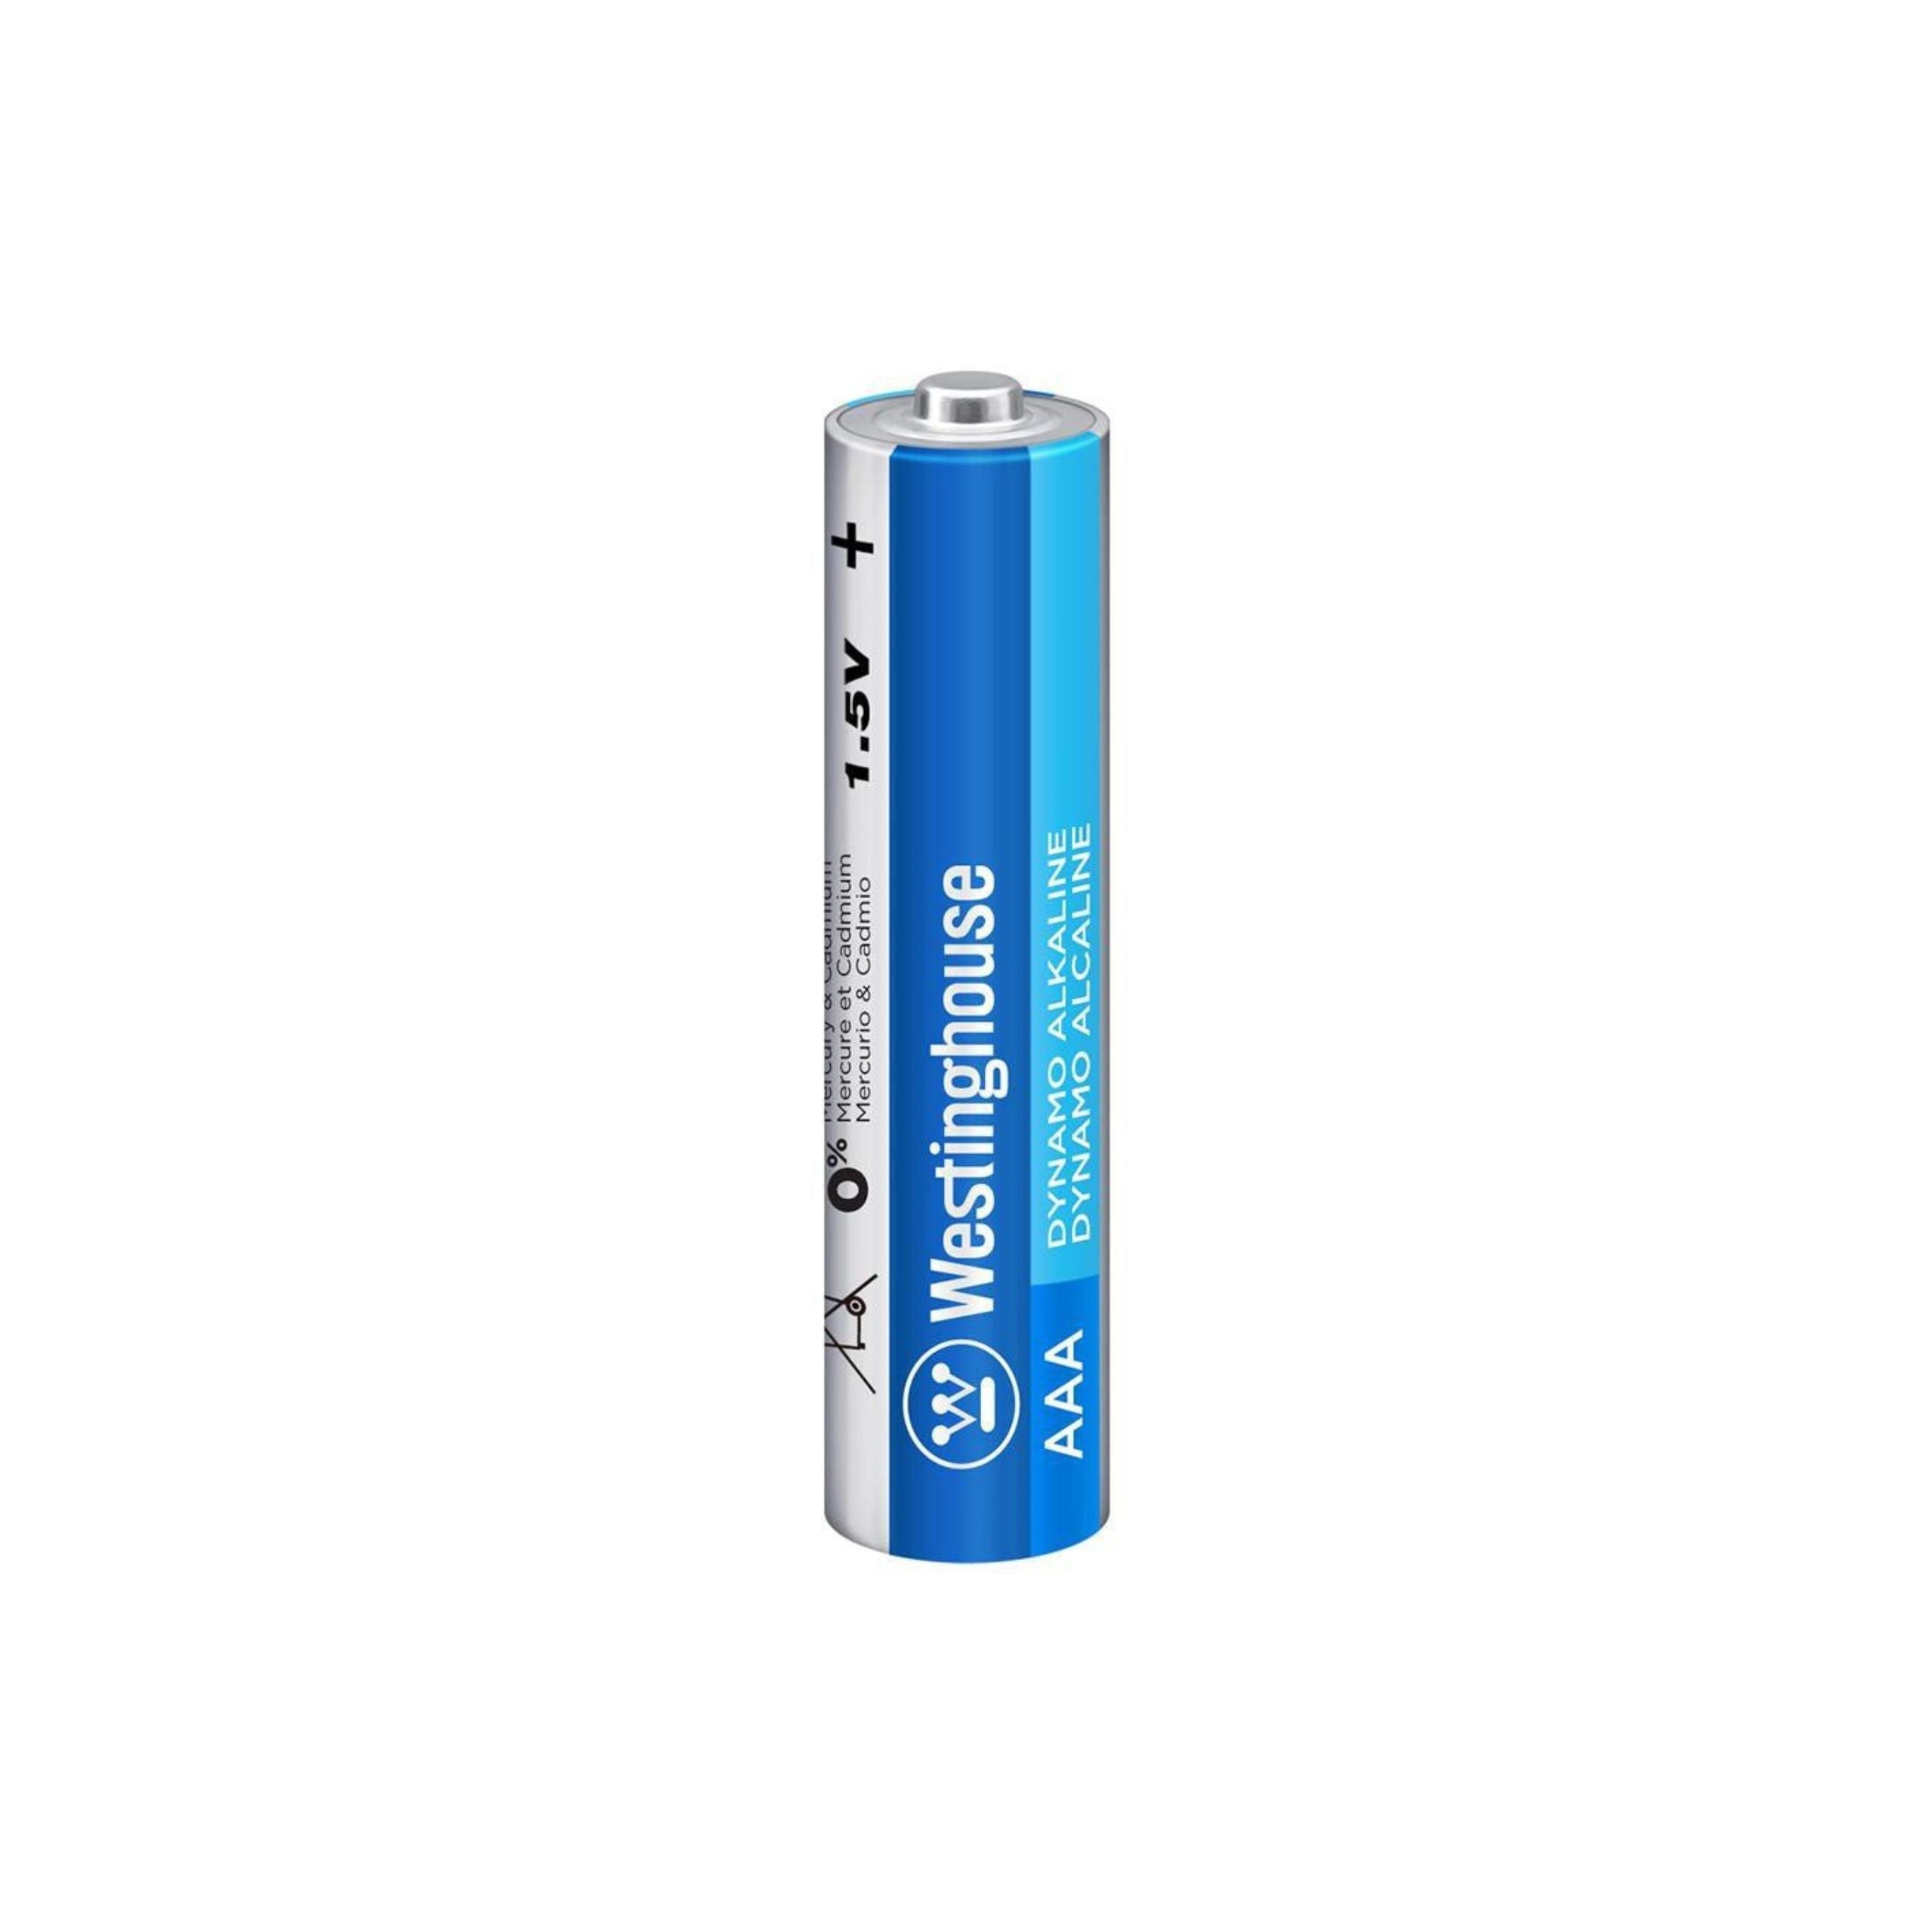 Westinghouse AAA Dynamo Alkaline Batteries